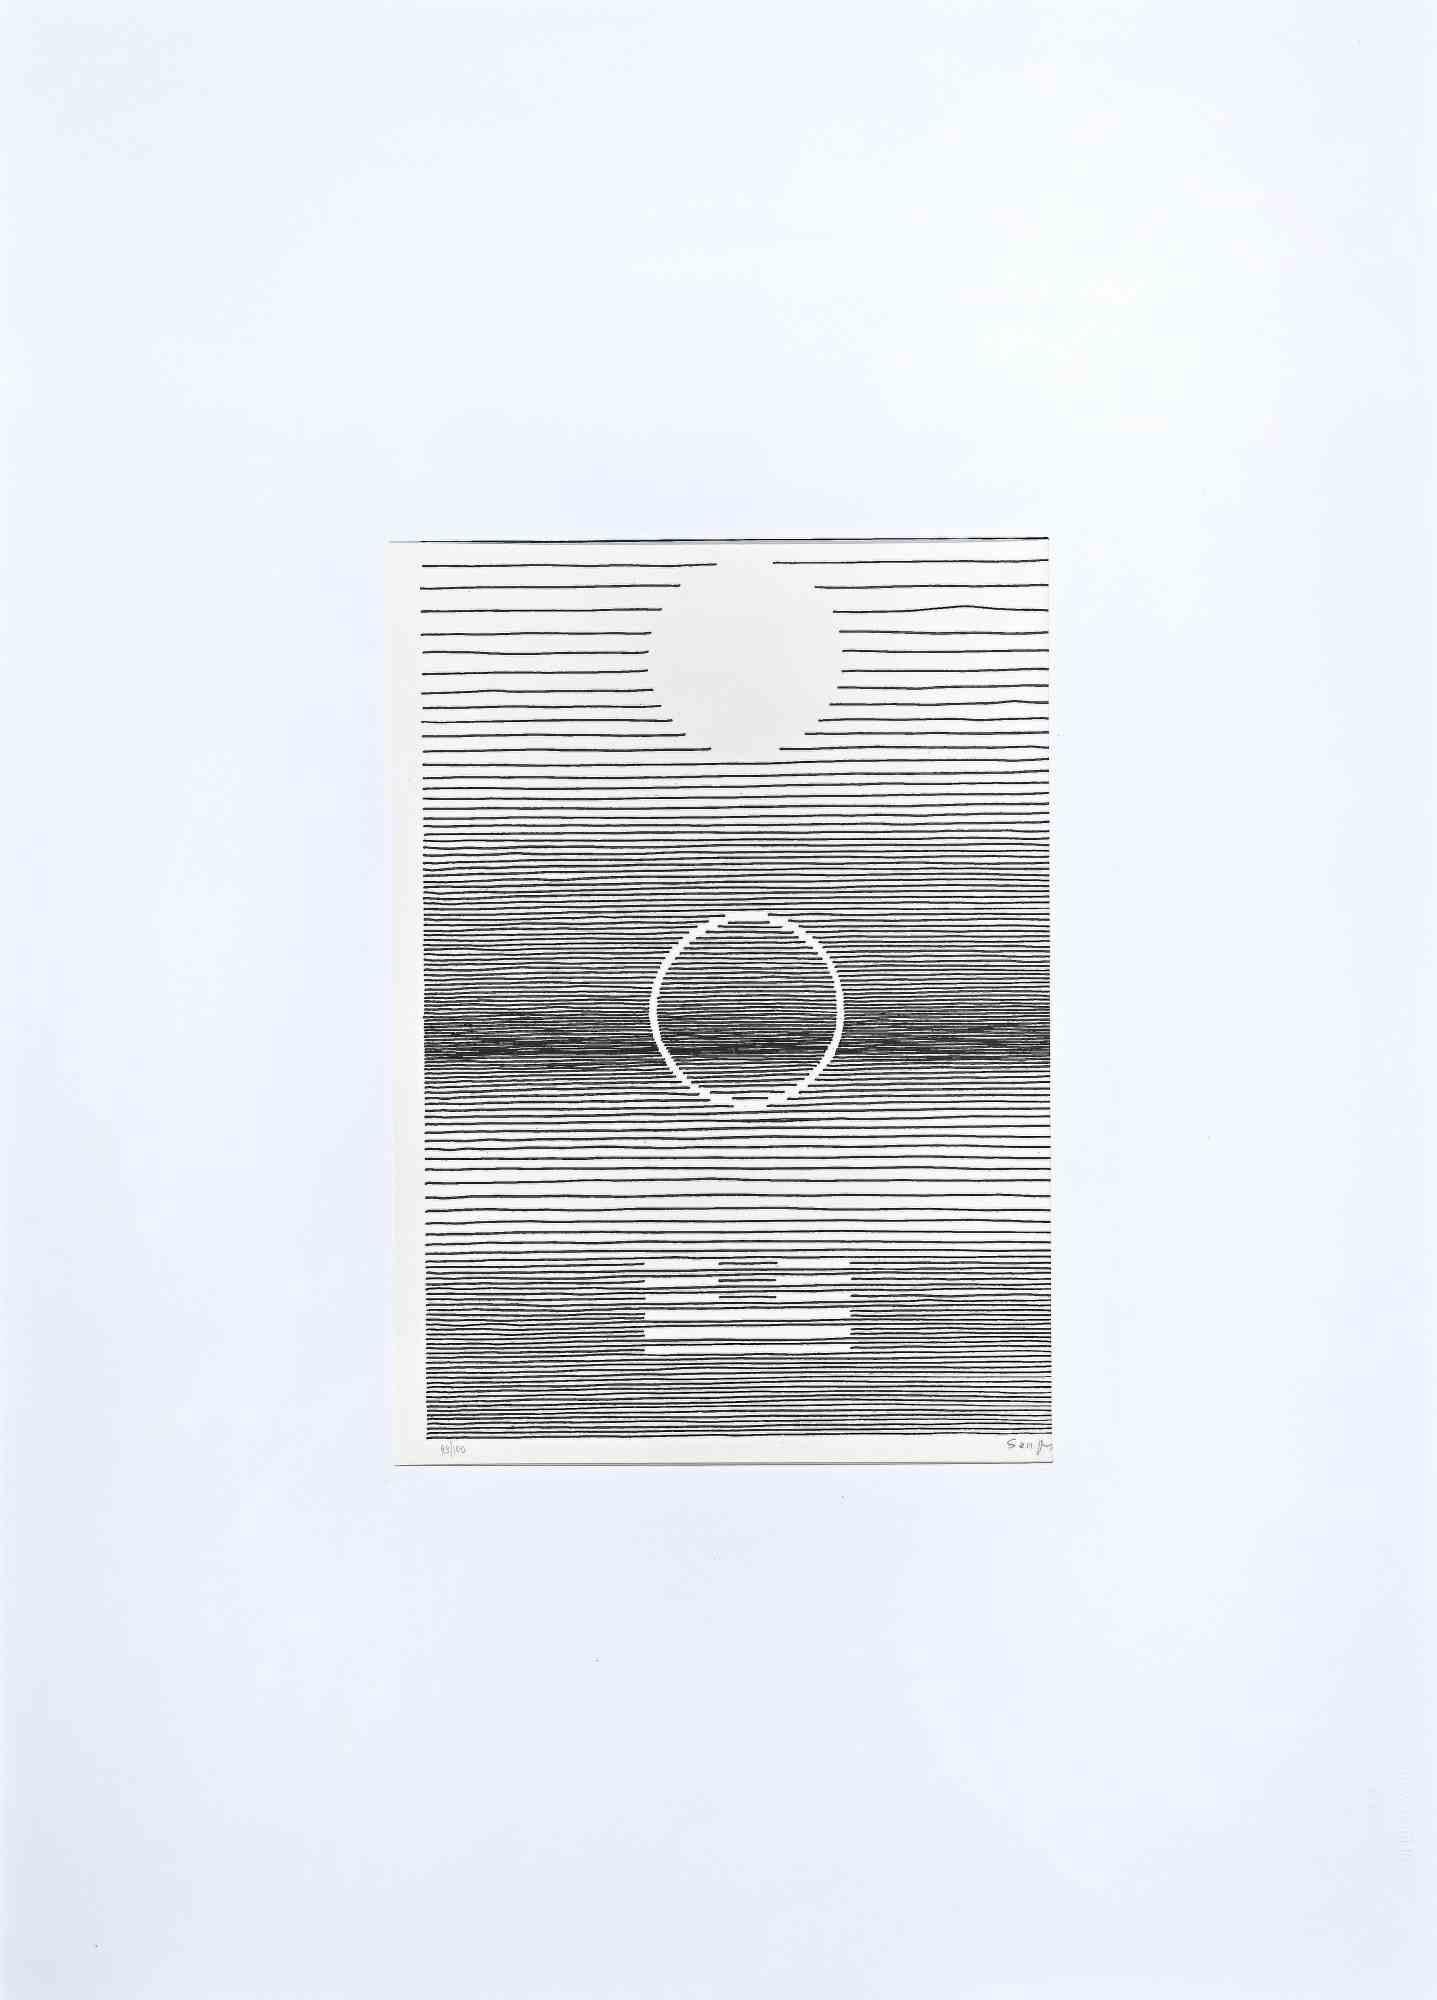 Composition abstraite  - Lithographie de Michel Seuphor - 1973